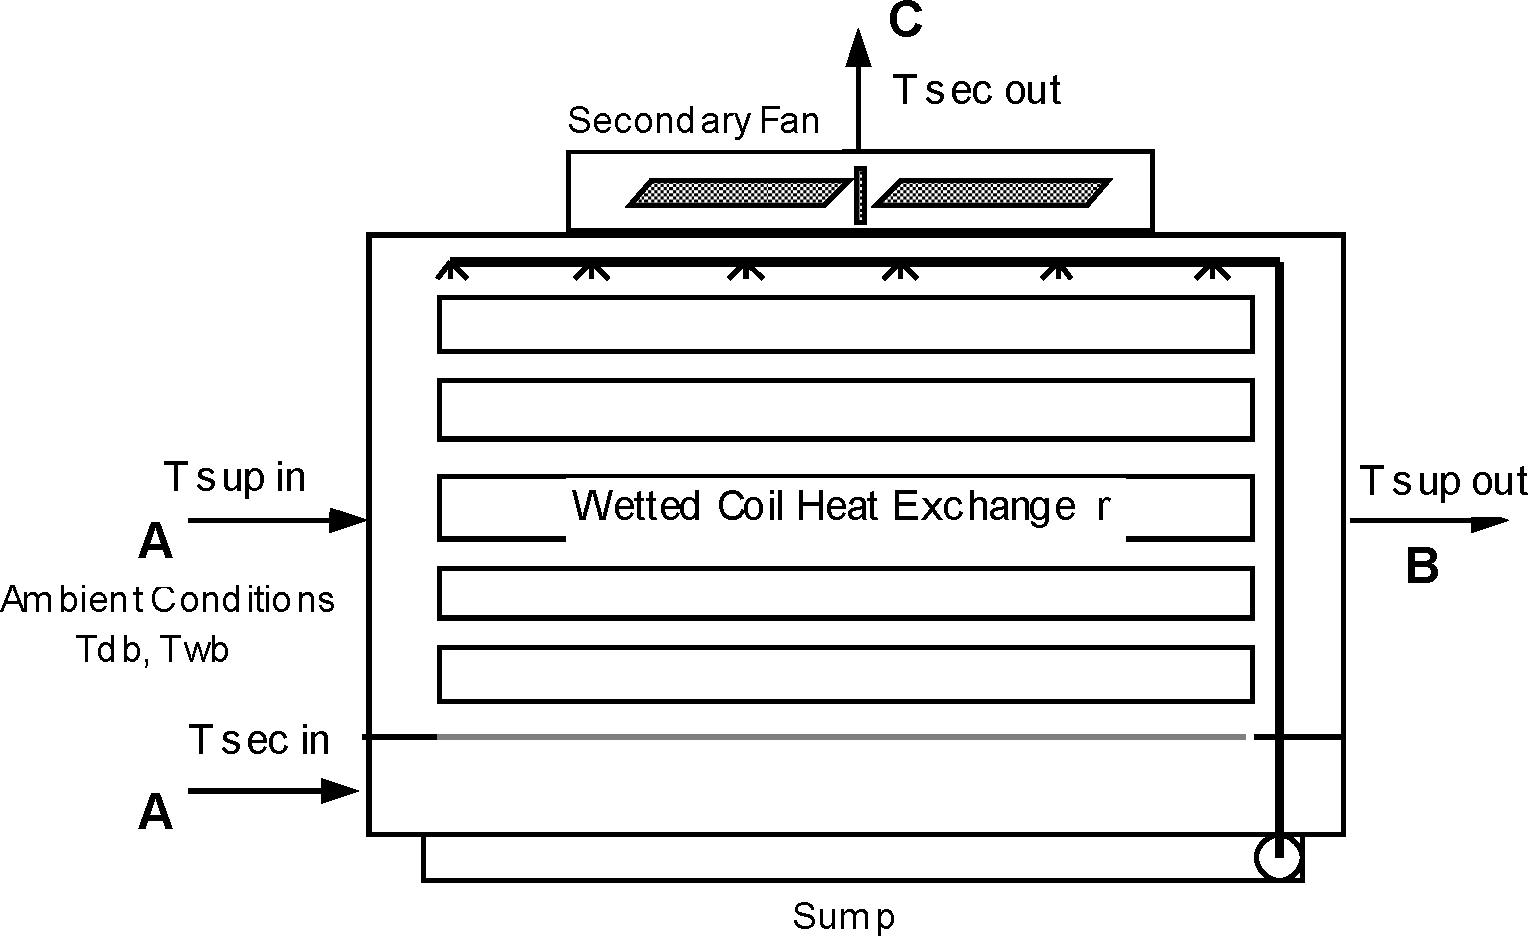 Wet Coil Indirect Evaporative Cooler [fig:wet-coil-indirect-evaporative-cooler]